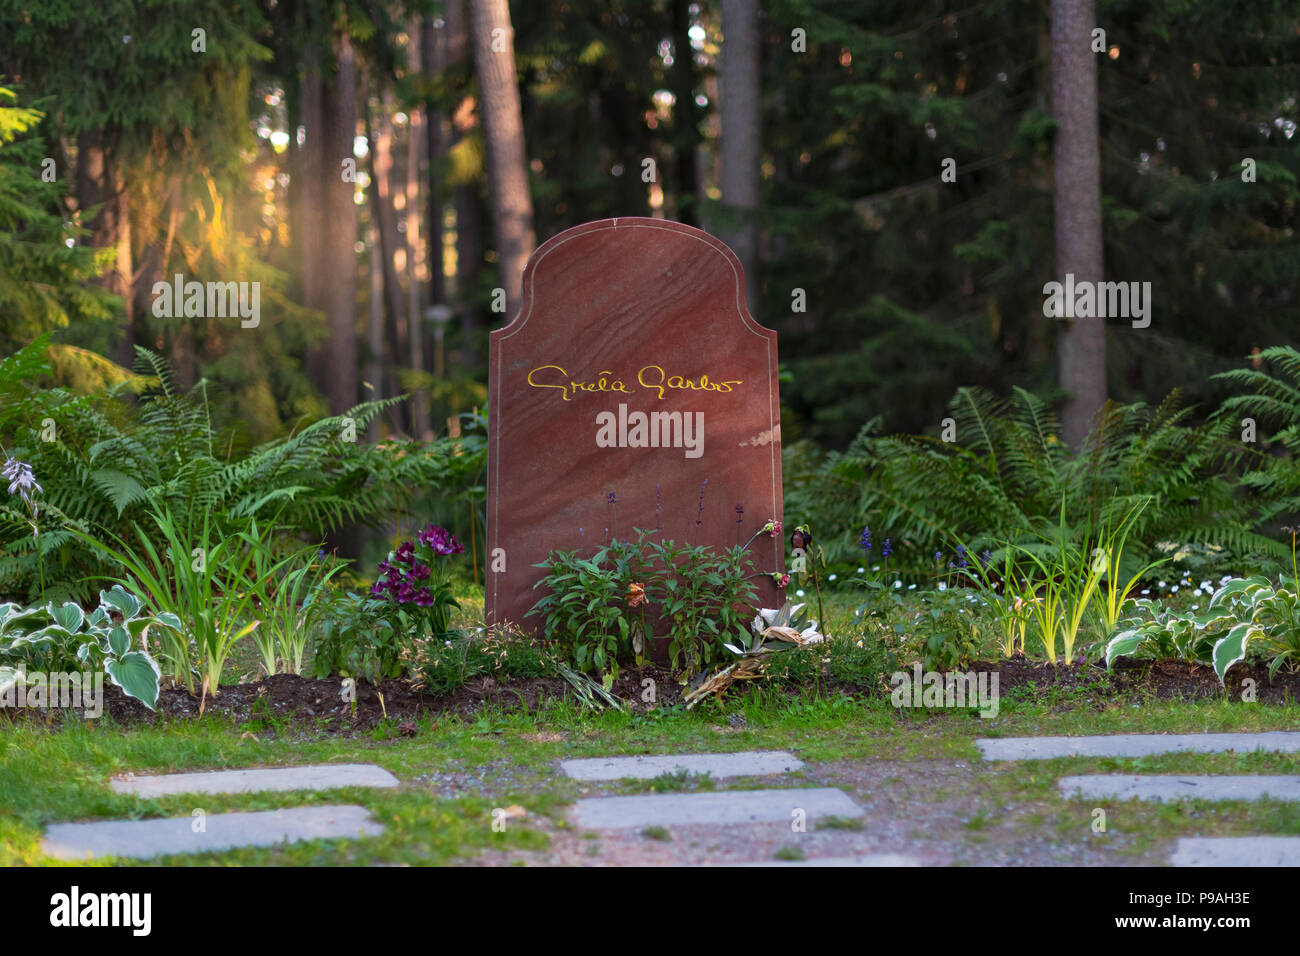 Tomba della leggendaria attrice Greta Garbo a Skogskyrkogarden a Stoccolma nel cimitero di legno Foto Stock